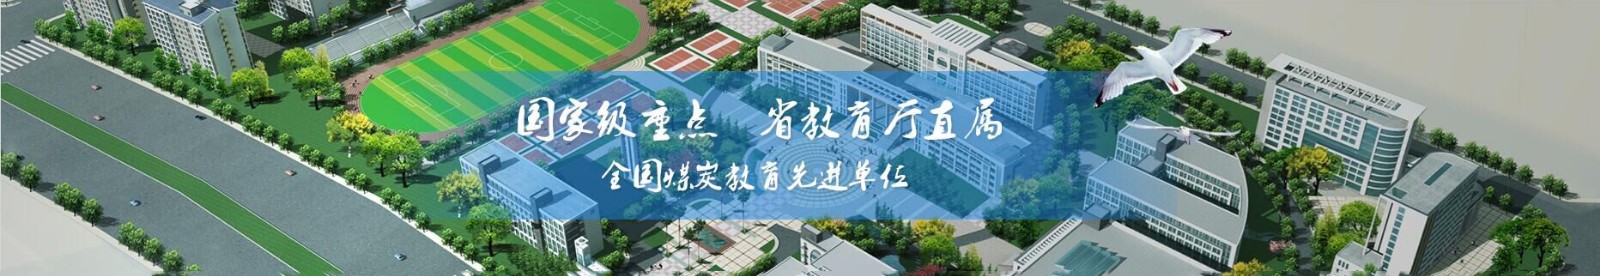 安徽省合肥能源技术学校公司介绍